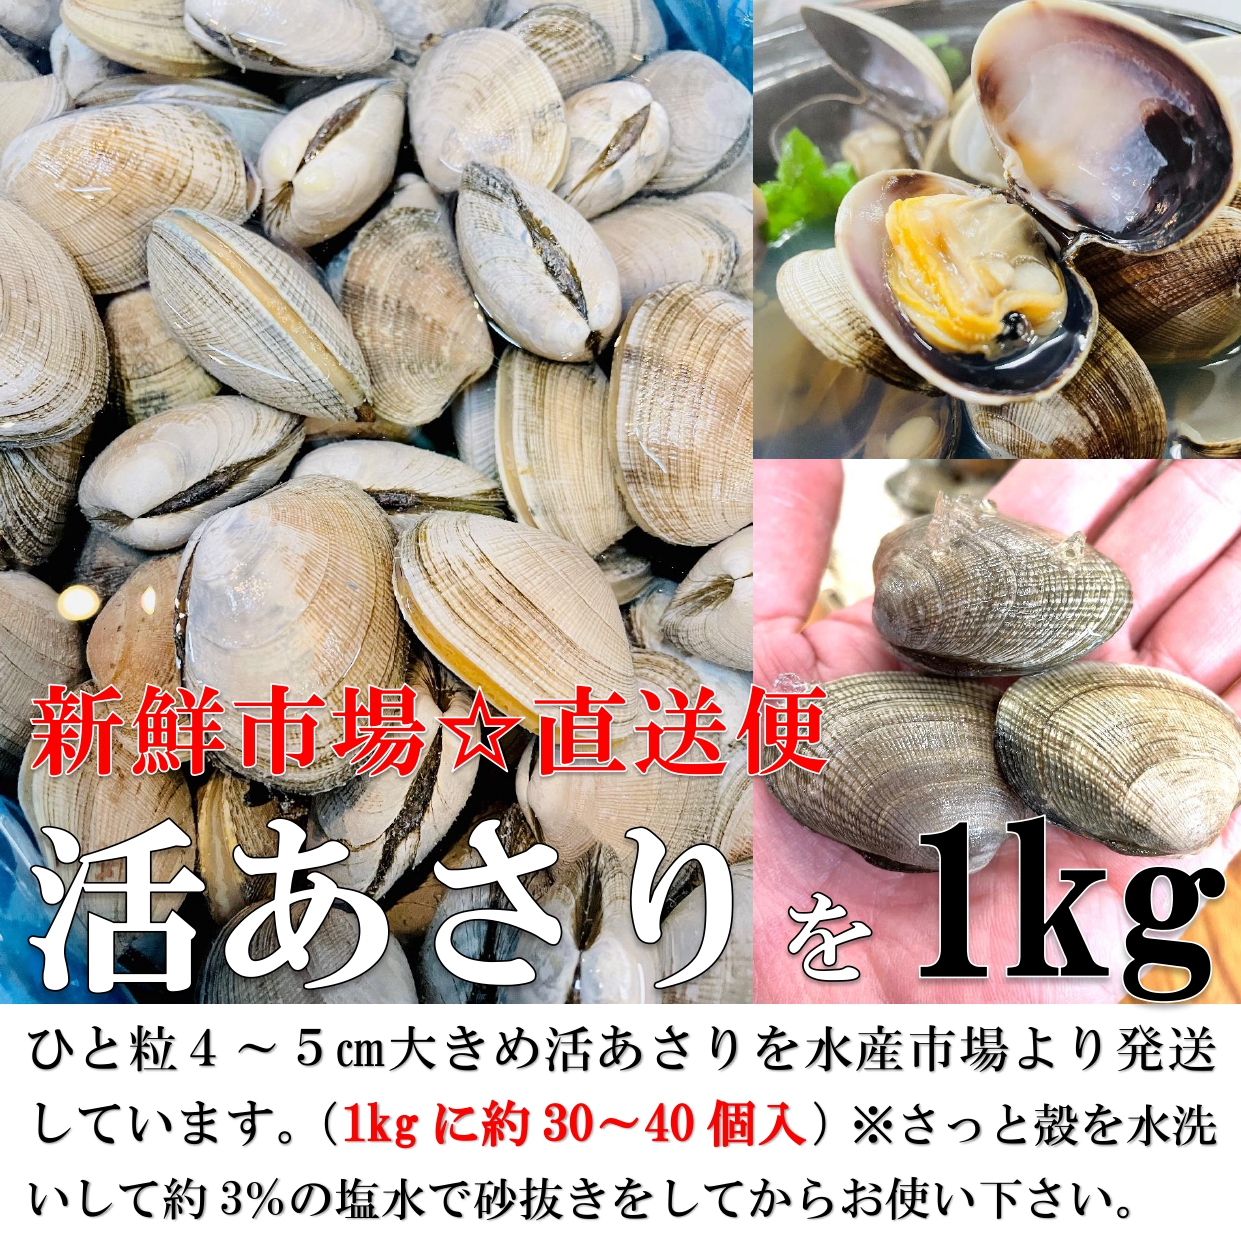 ....1kg Hokkaido production large grain 1 piece 20~30g large grain ... domestic production ... natural ... littleneck clam . profit ..